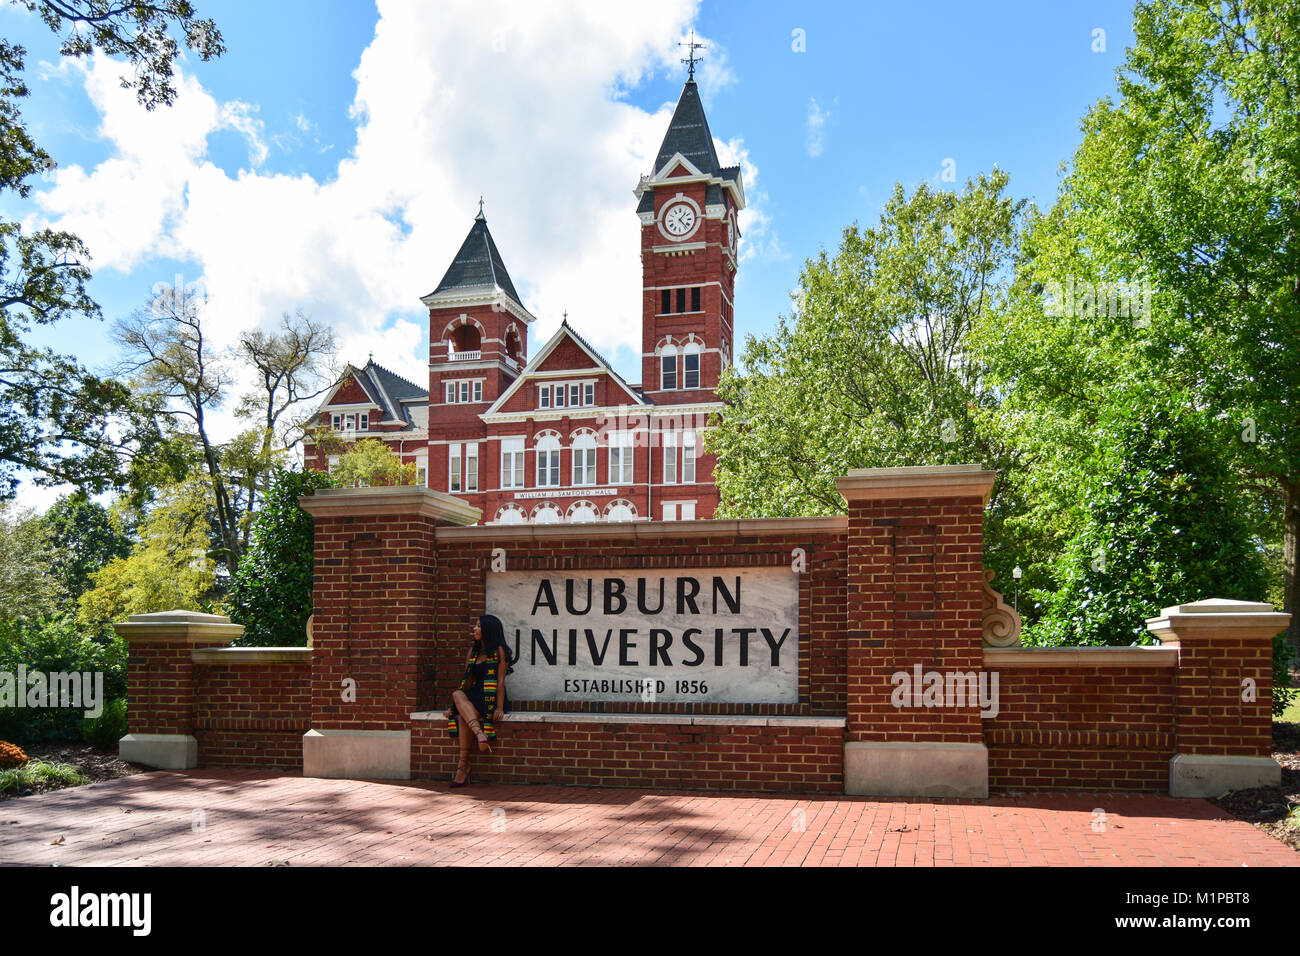 AUBURN, AL -ottobre 10,20 17: Auburn University si trova a Auburn, Alabama è un ente pubblico di ricerca università fondata nel 1856. Foto Stock